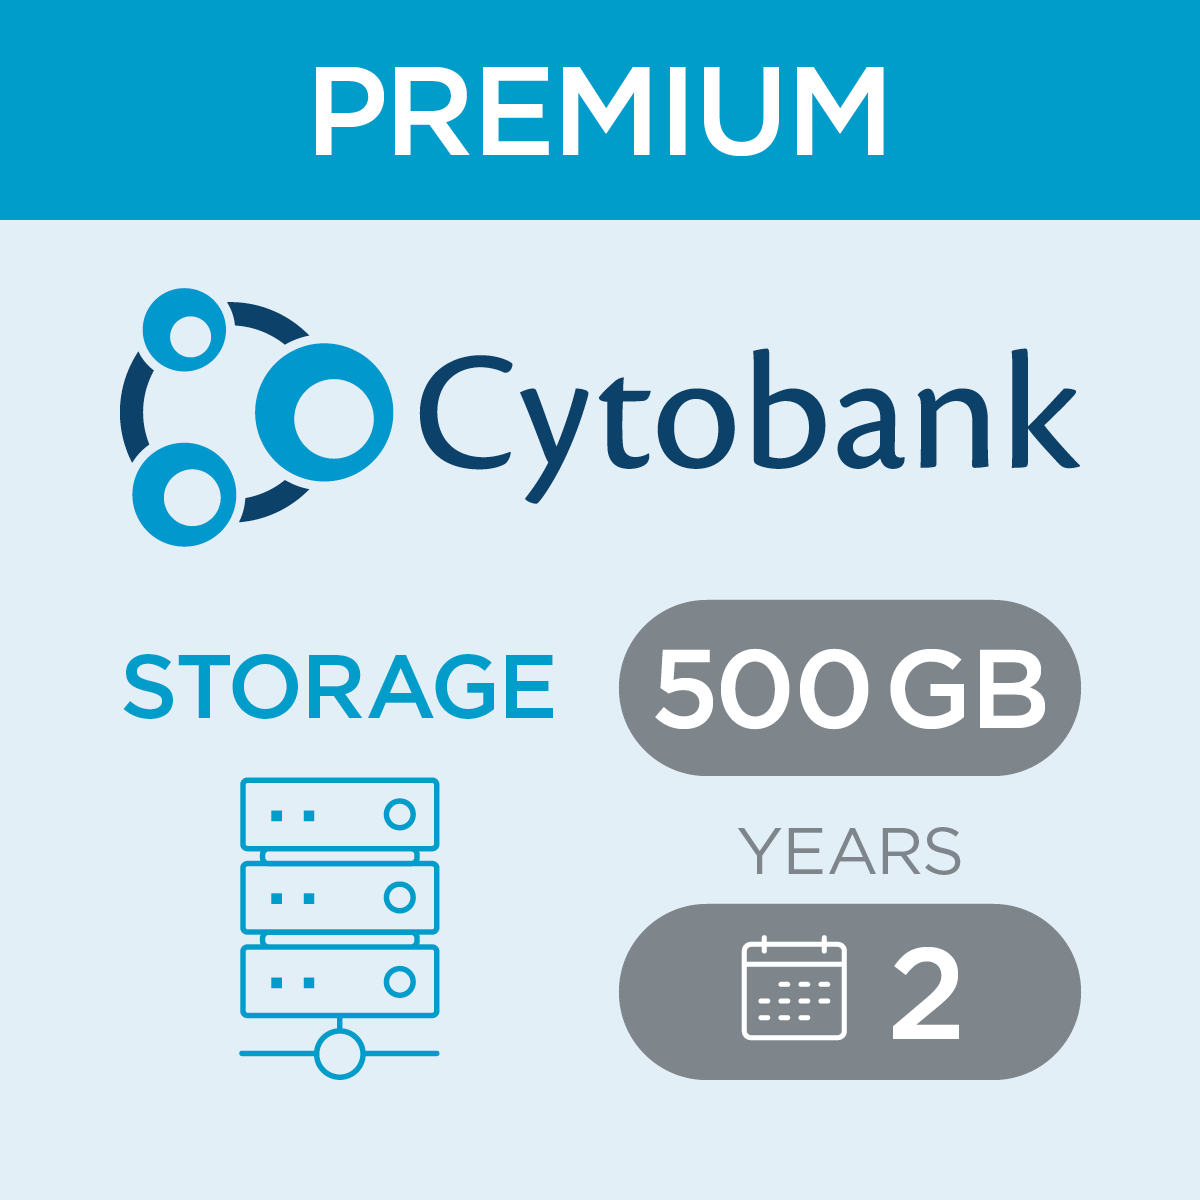 c47420, Cytobank Storage per 500 Gb for Premium, 2-year